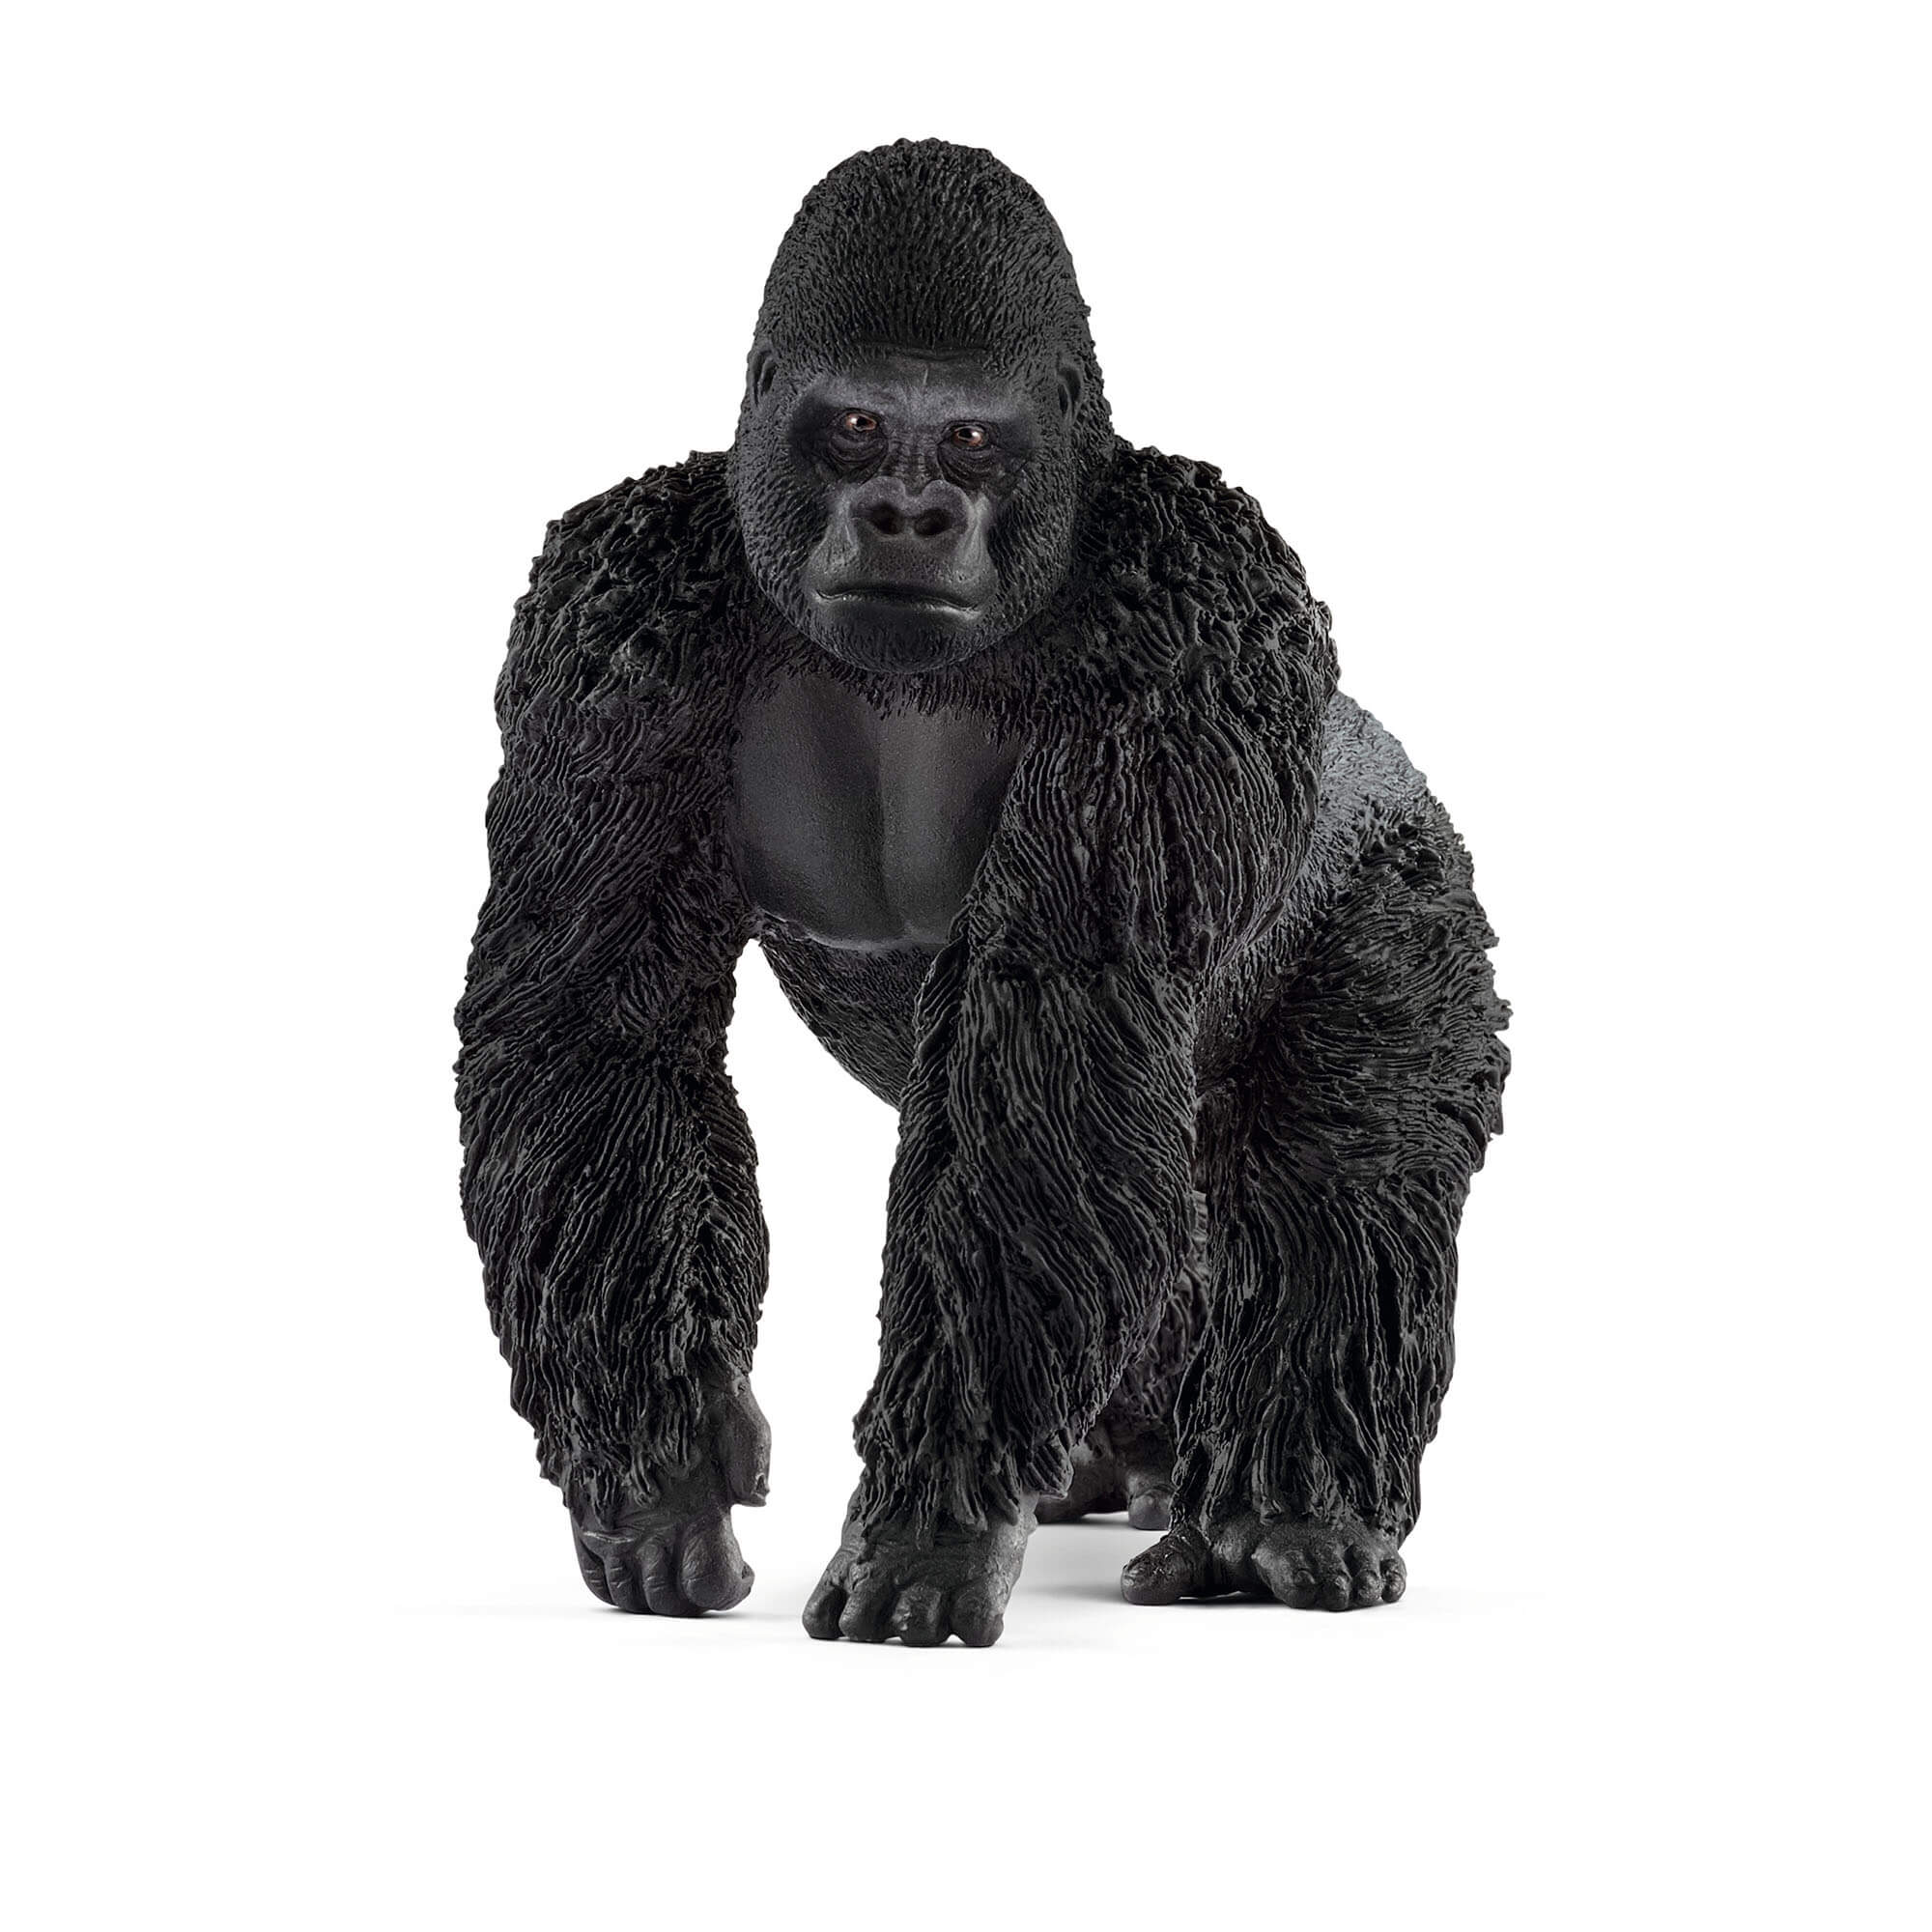 Schleich Wild Life Male Gorilla Animal Figure